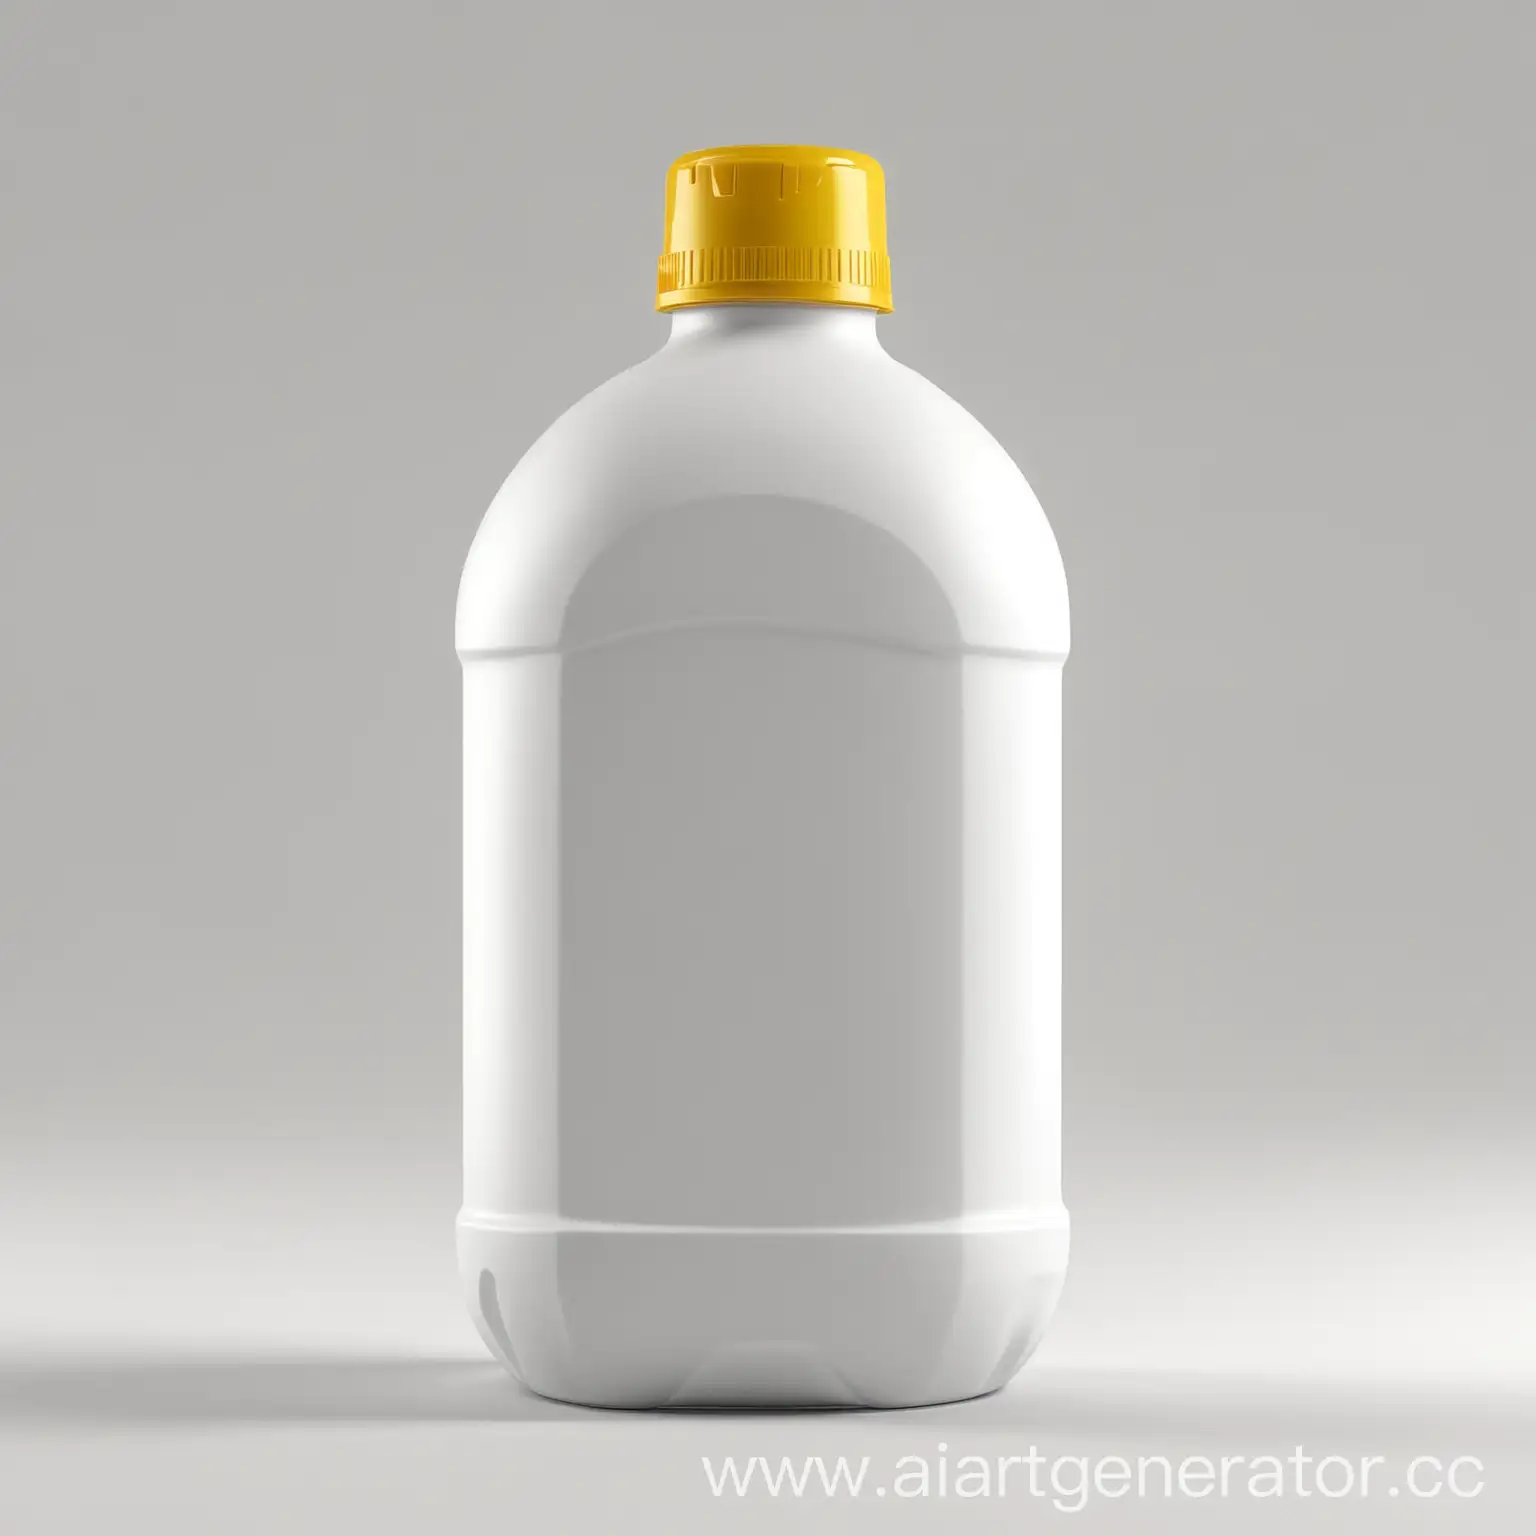 бутылка круглая белая пластиковая 1л с желтой крышкой на белом фоне 3d реалистично